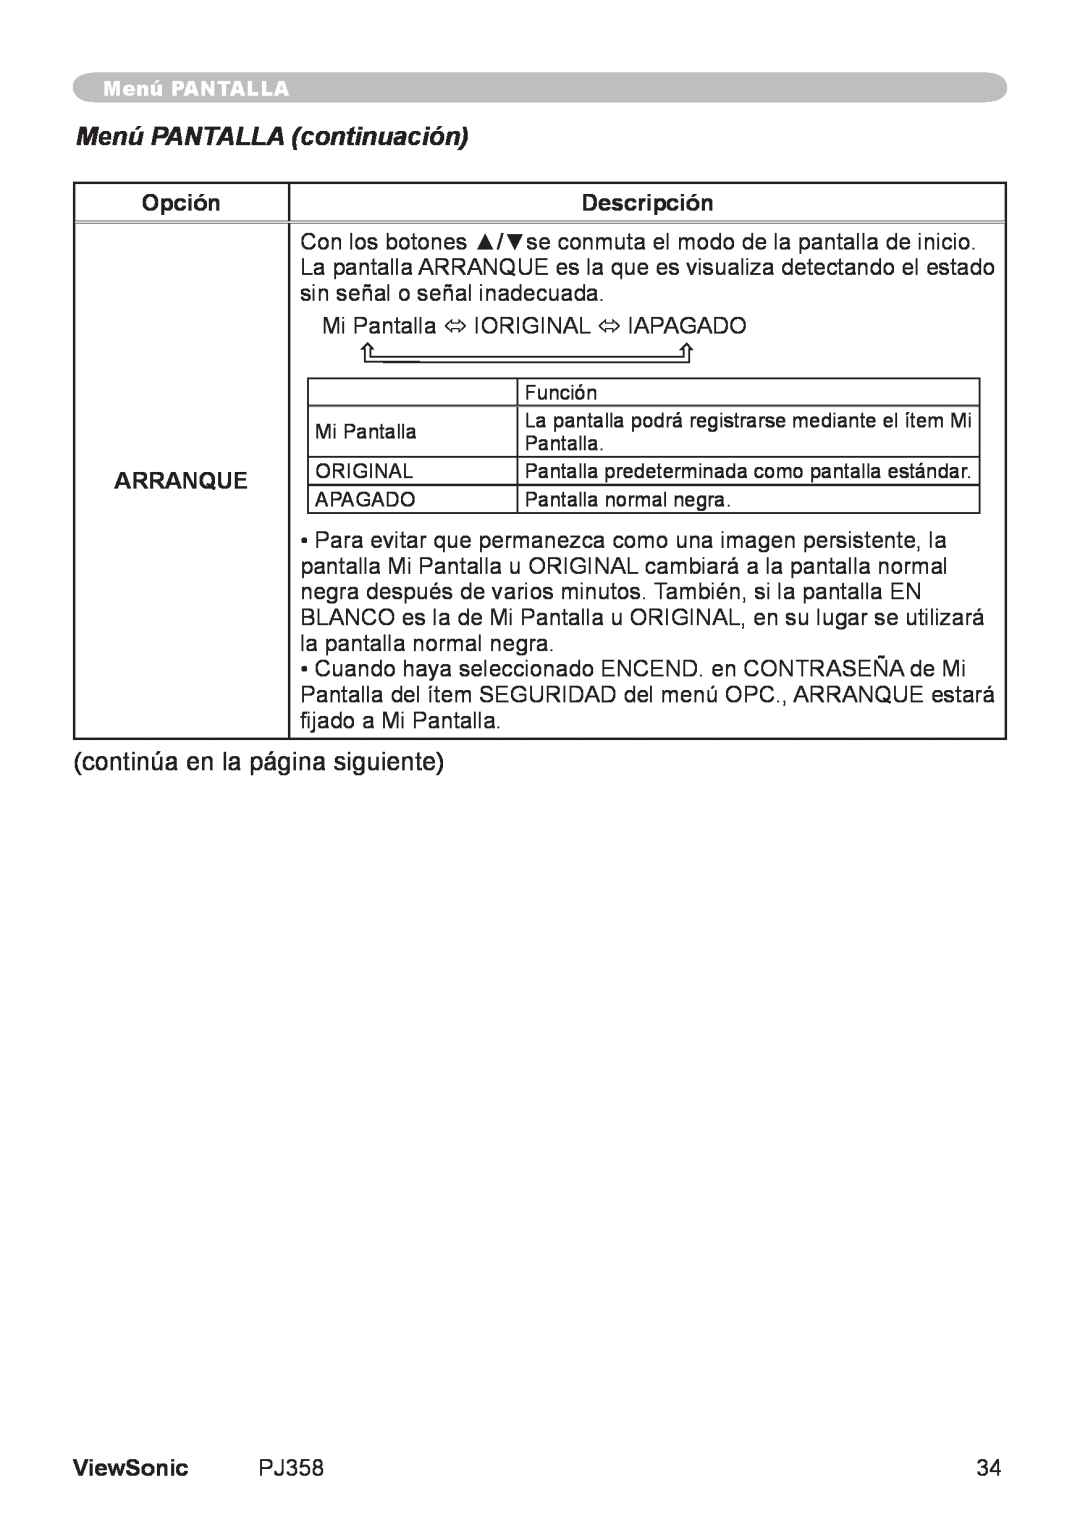 ViewSonic PJ358, VS11611 manual Menú PANTALLA continuación, Opción, Descripción, Arranque, ViewSonic 